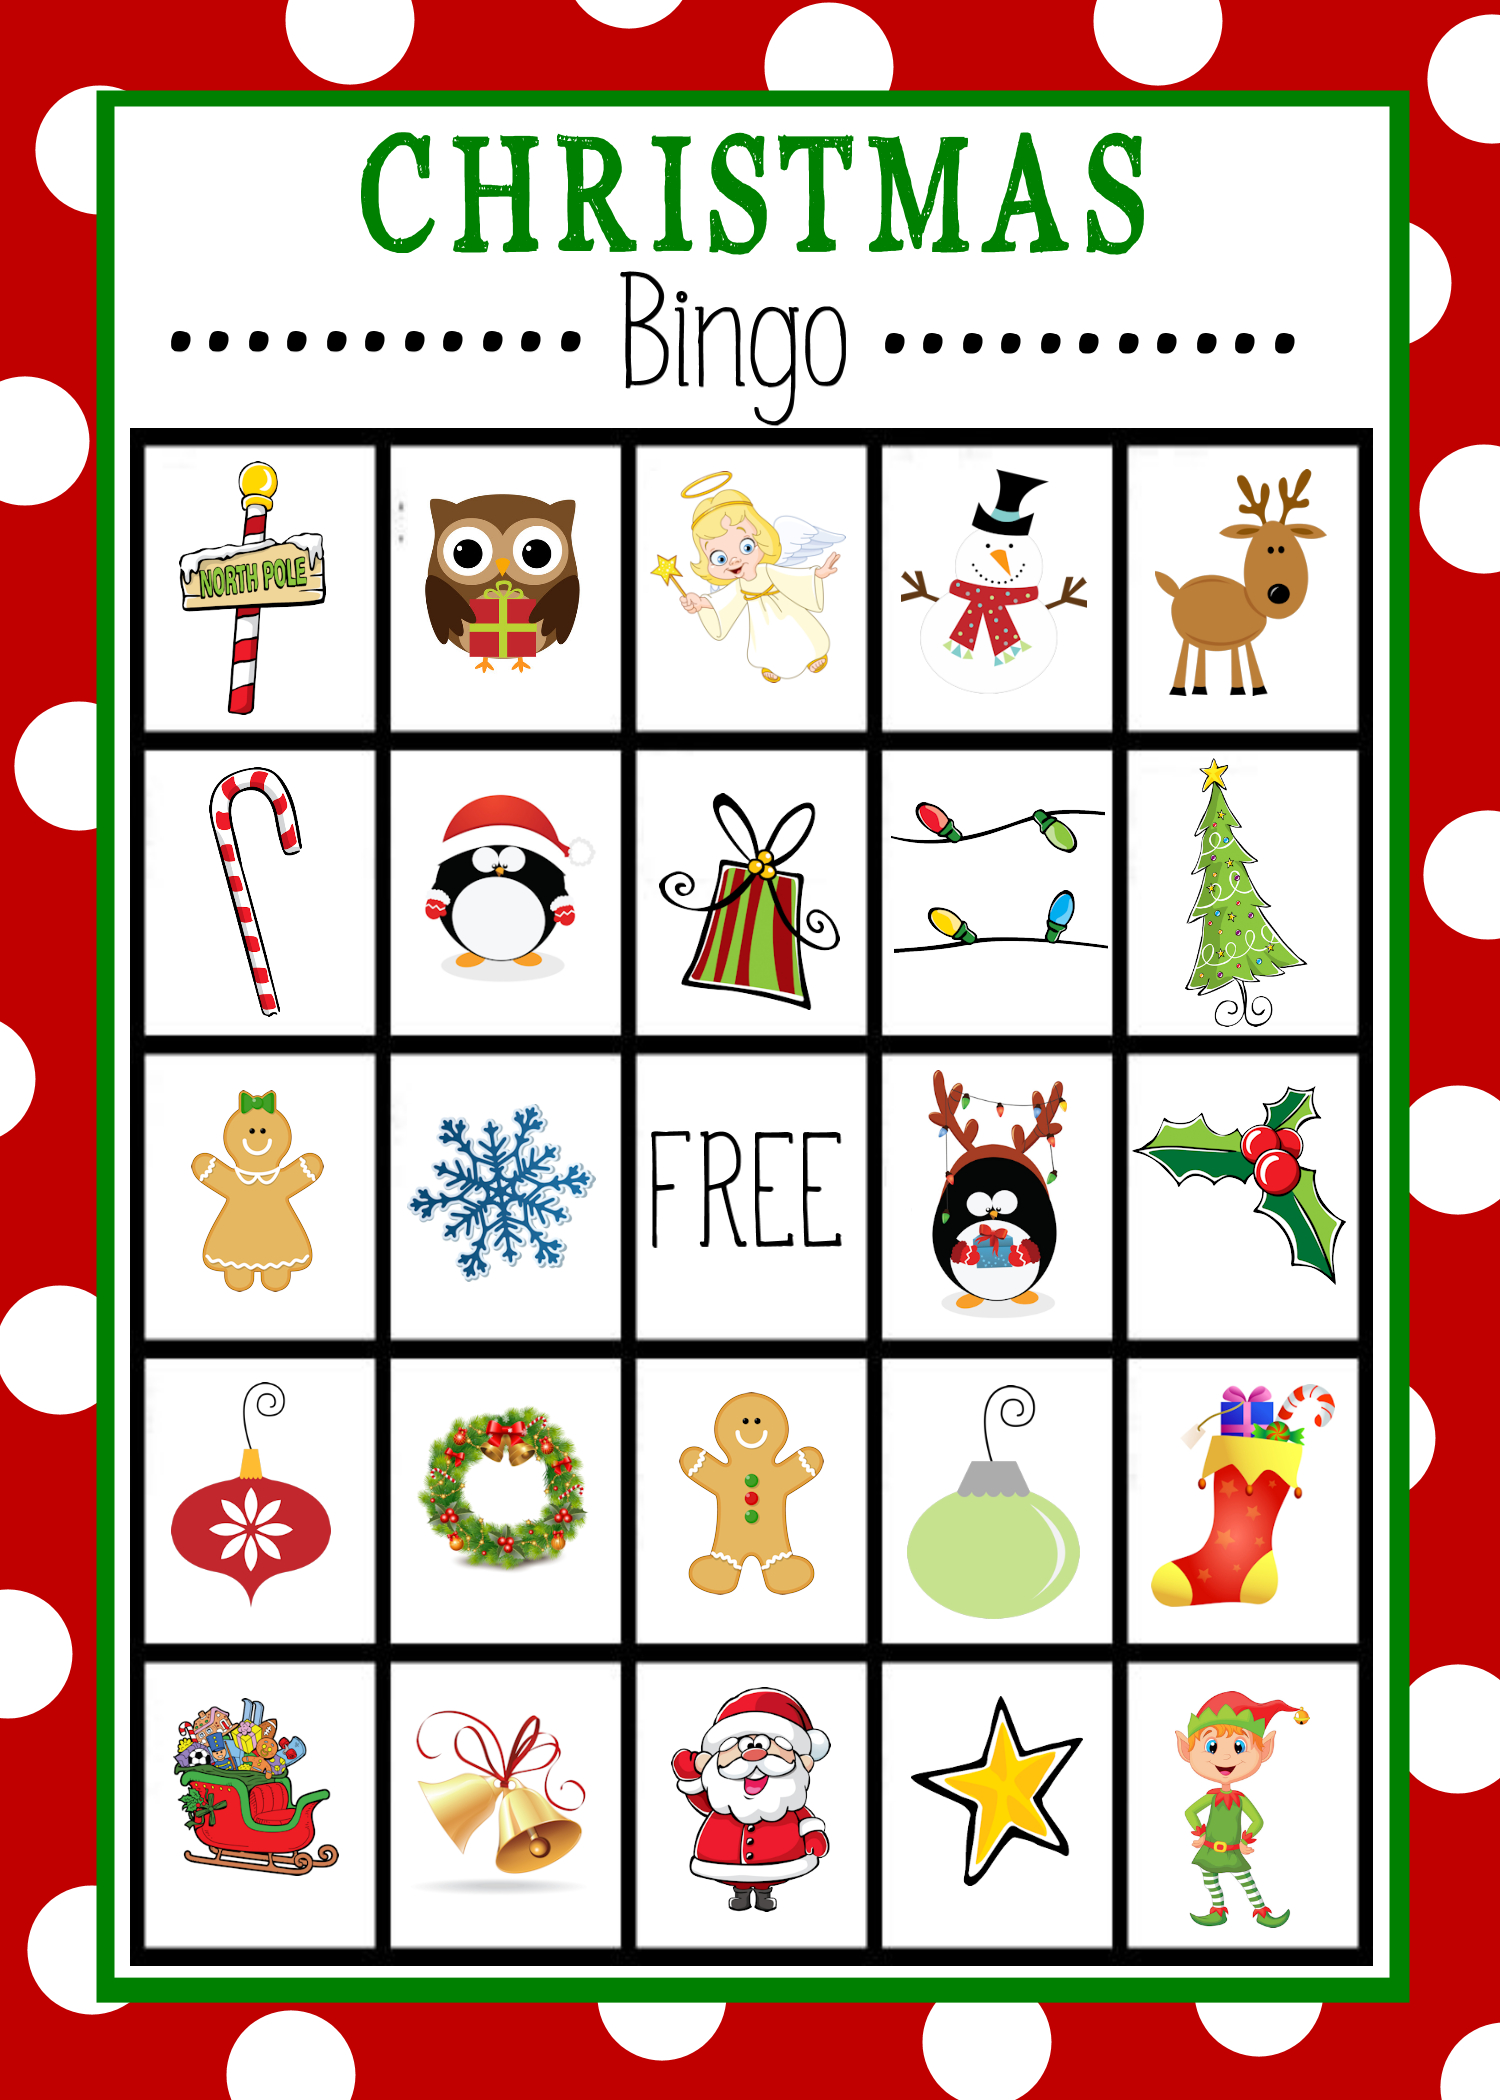 Free Printable Christmas Bingo Game | Christmas | Pinterest - Free Printable Bingo Cards For Large Groups